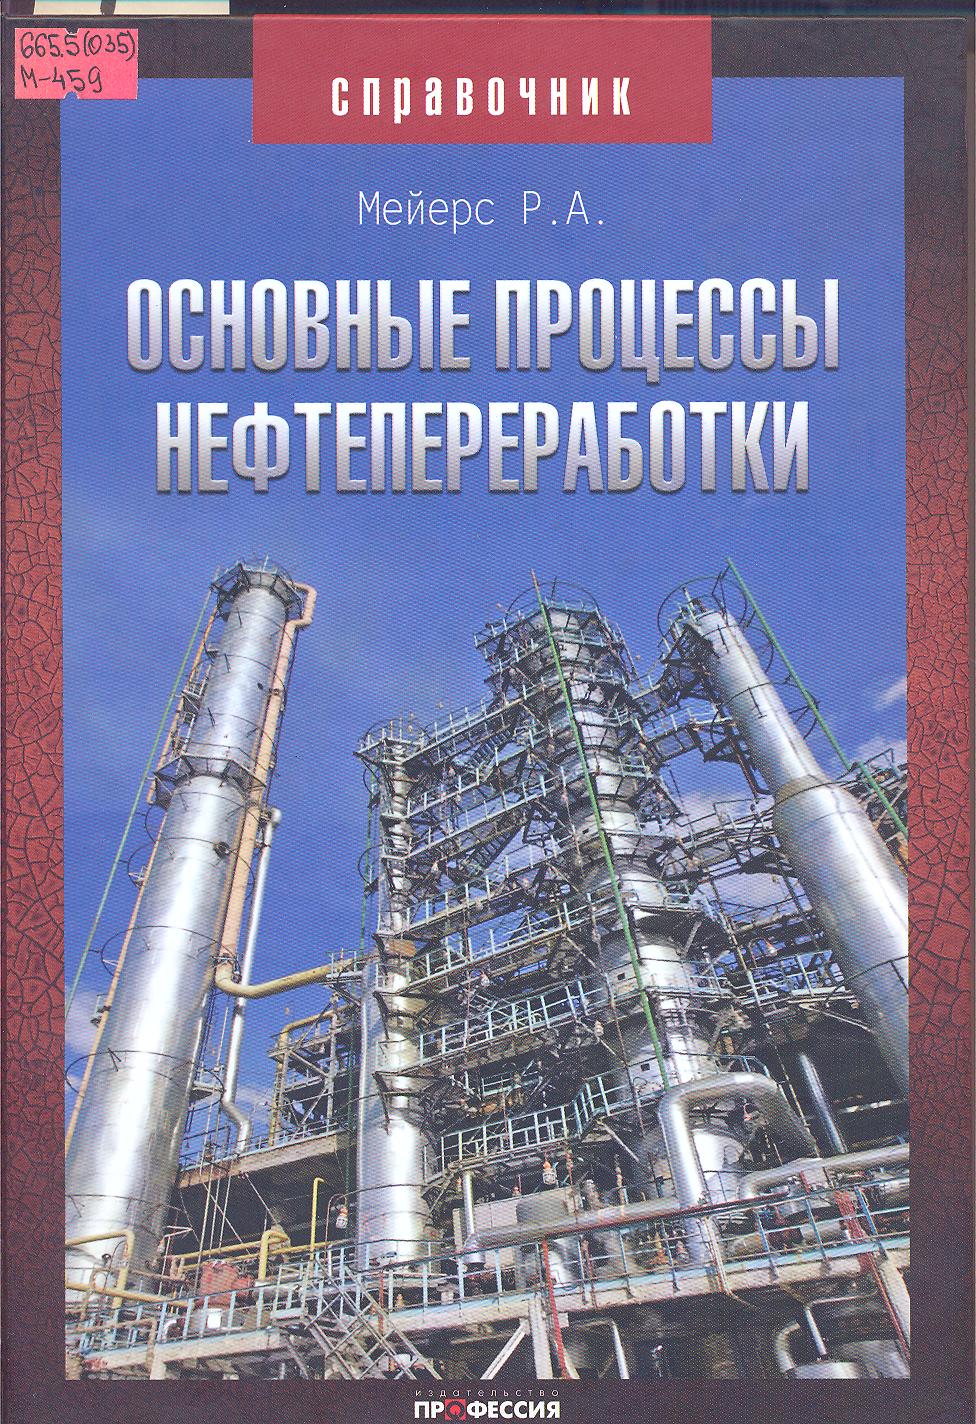 Переработка нефти профессии. Книга нефтехимия и нефтепереработка. Переработка нефти книга. Книга переработка нефти и газа. Книга технология переработки нефти и газа.